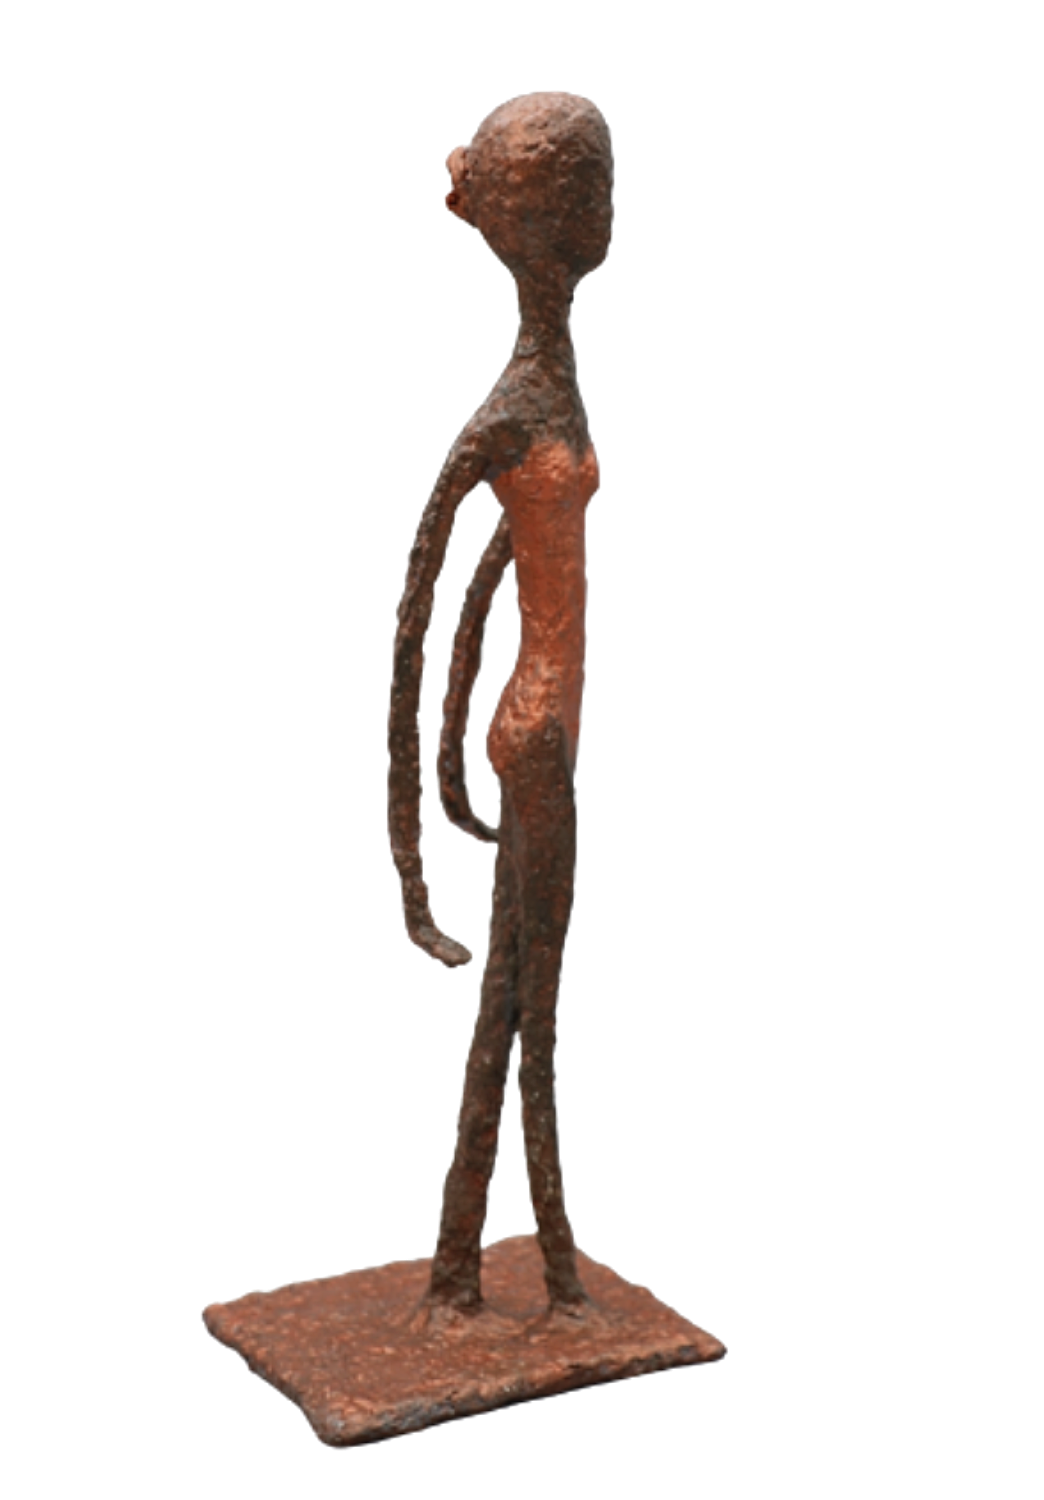 Mélika, sculpture n°61 en papier mâché, représente 1 danseuse en justaucorps cuivre, les bras en arrière, hauteur 30cm, patine bronze-cuivre